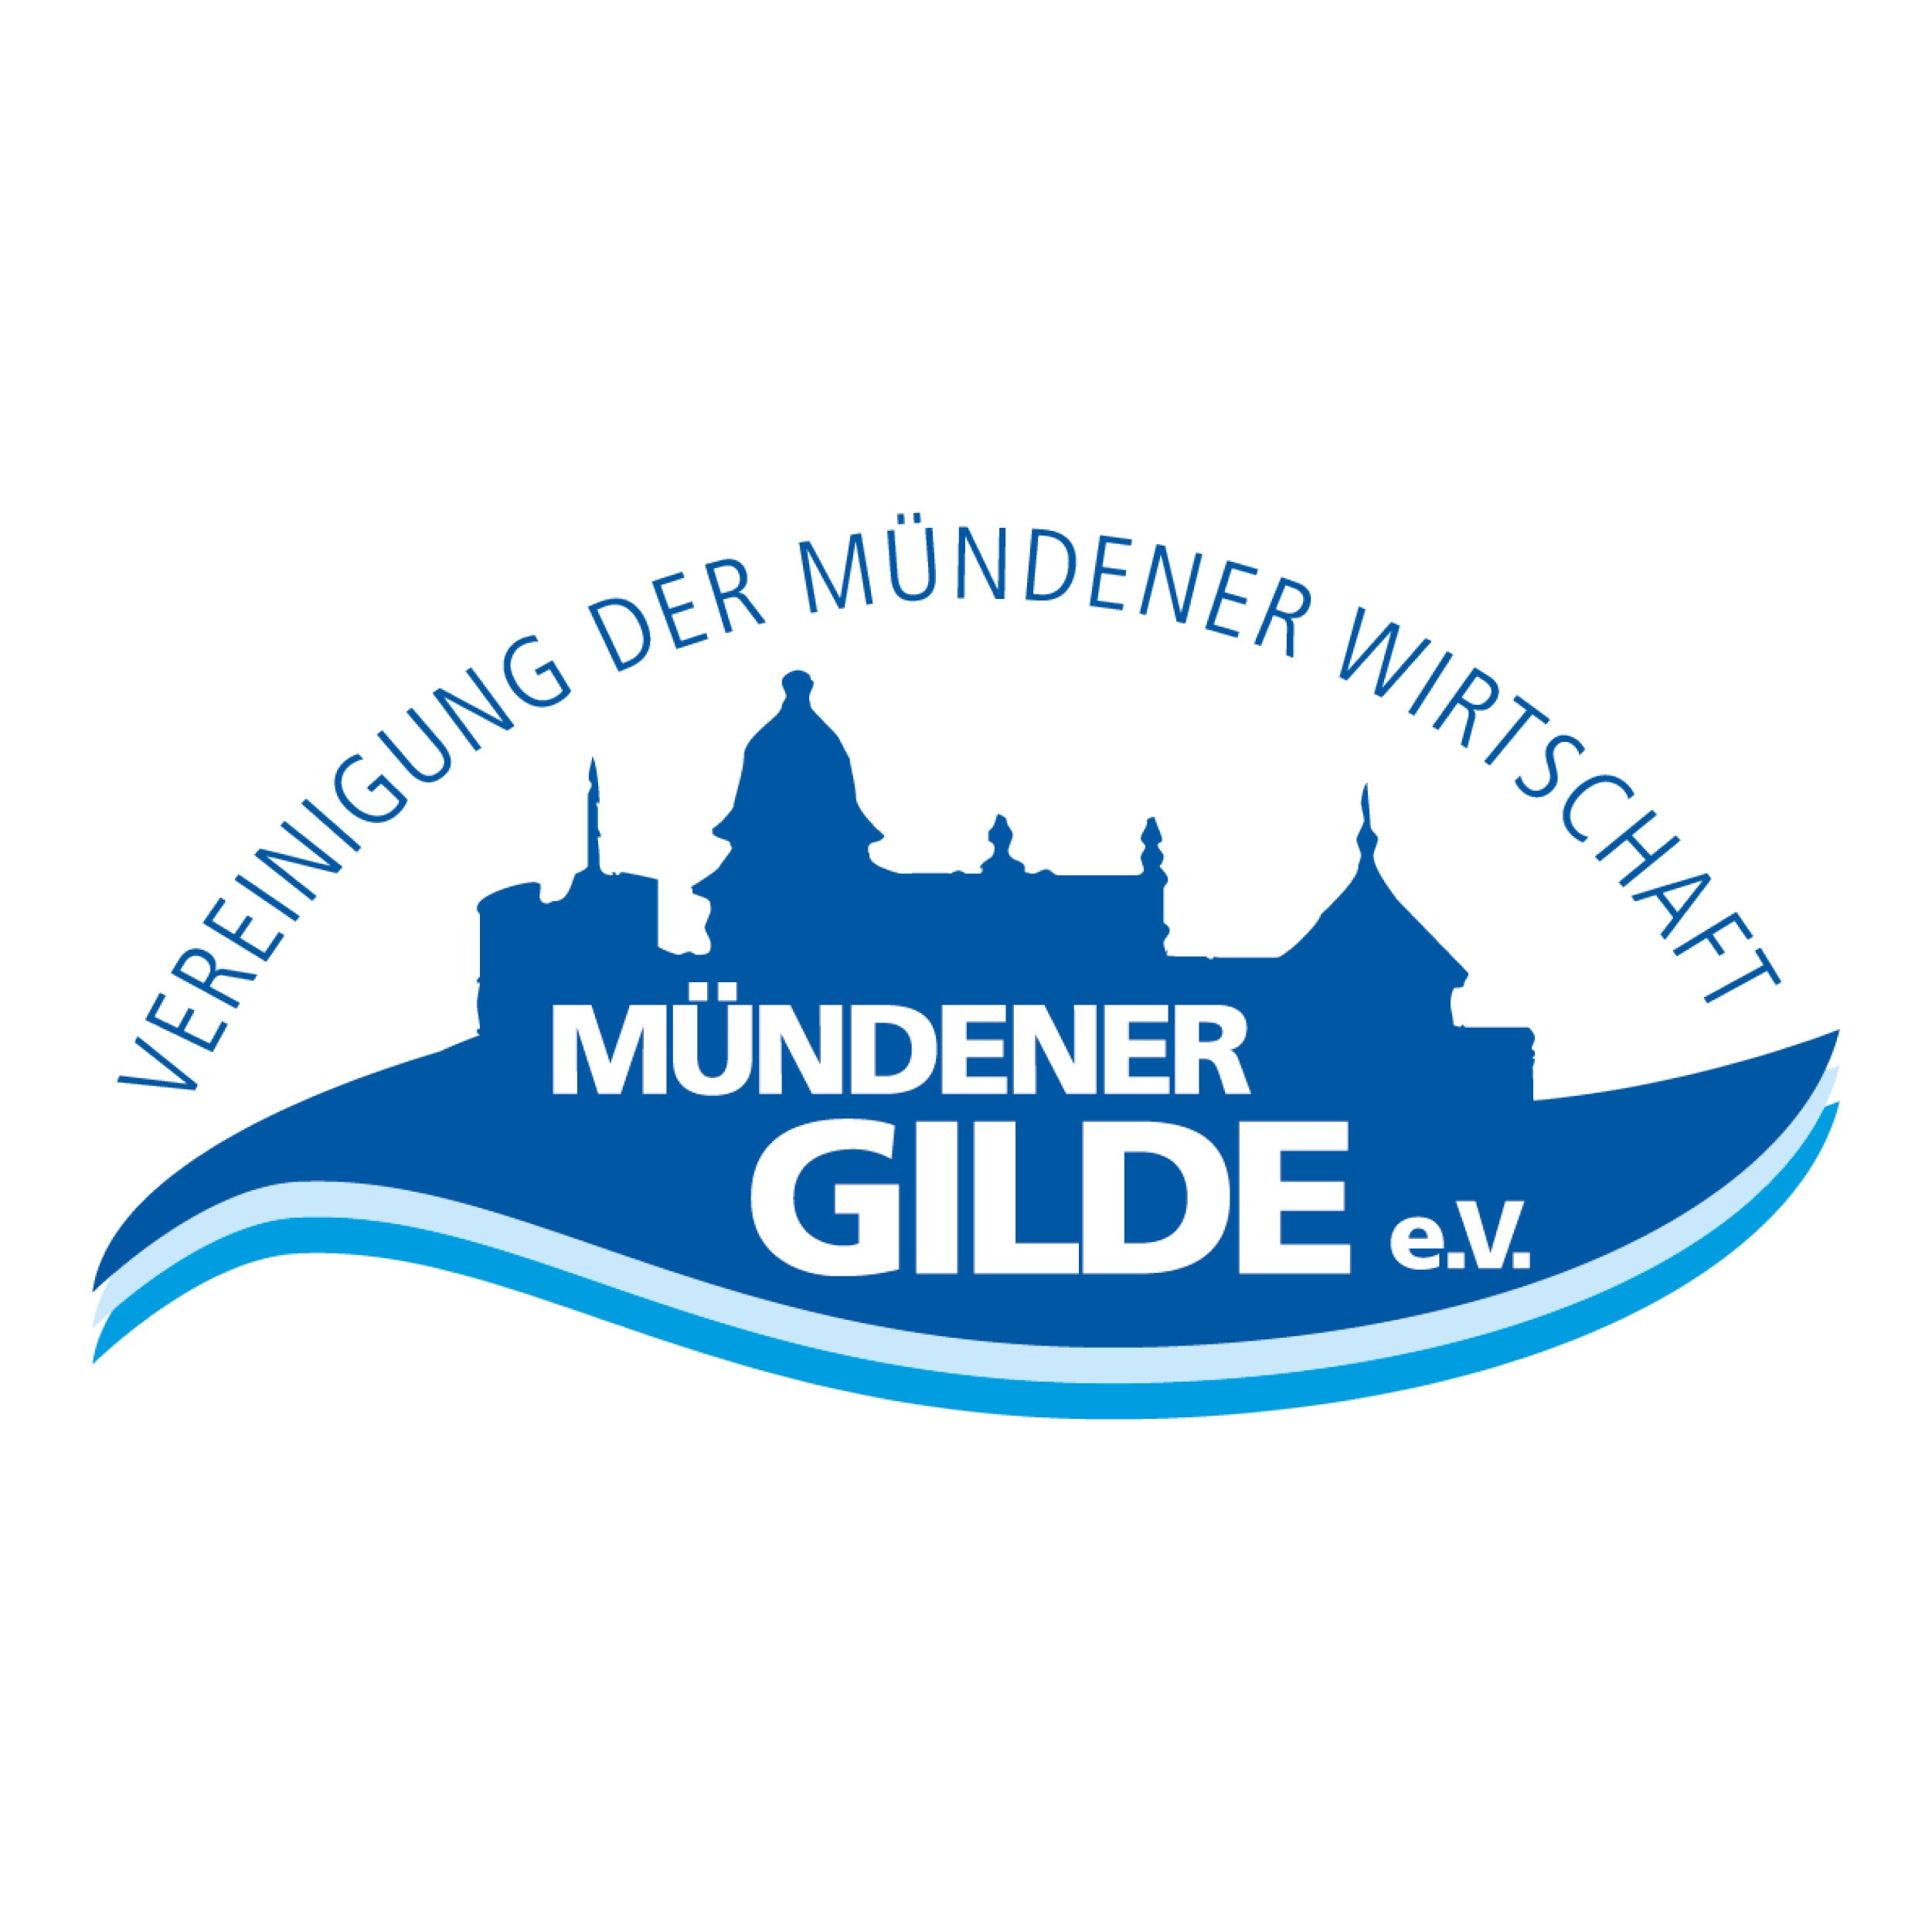  Mündener Gilde e.V.